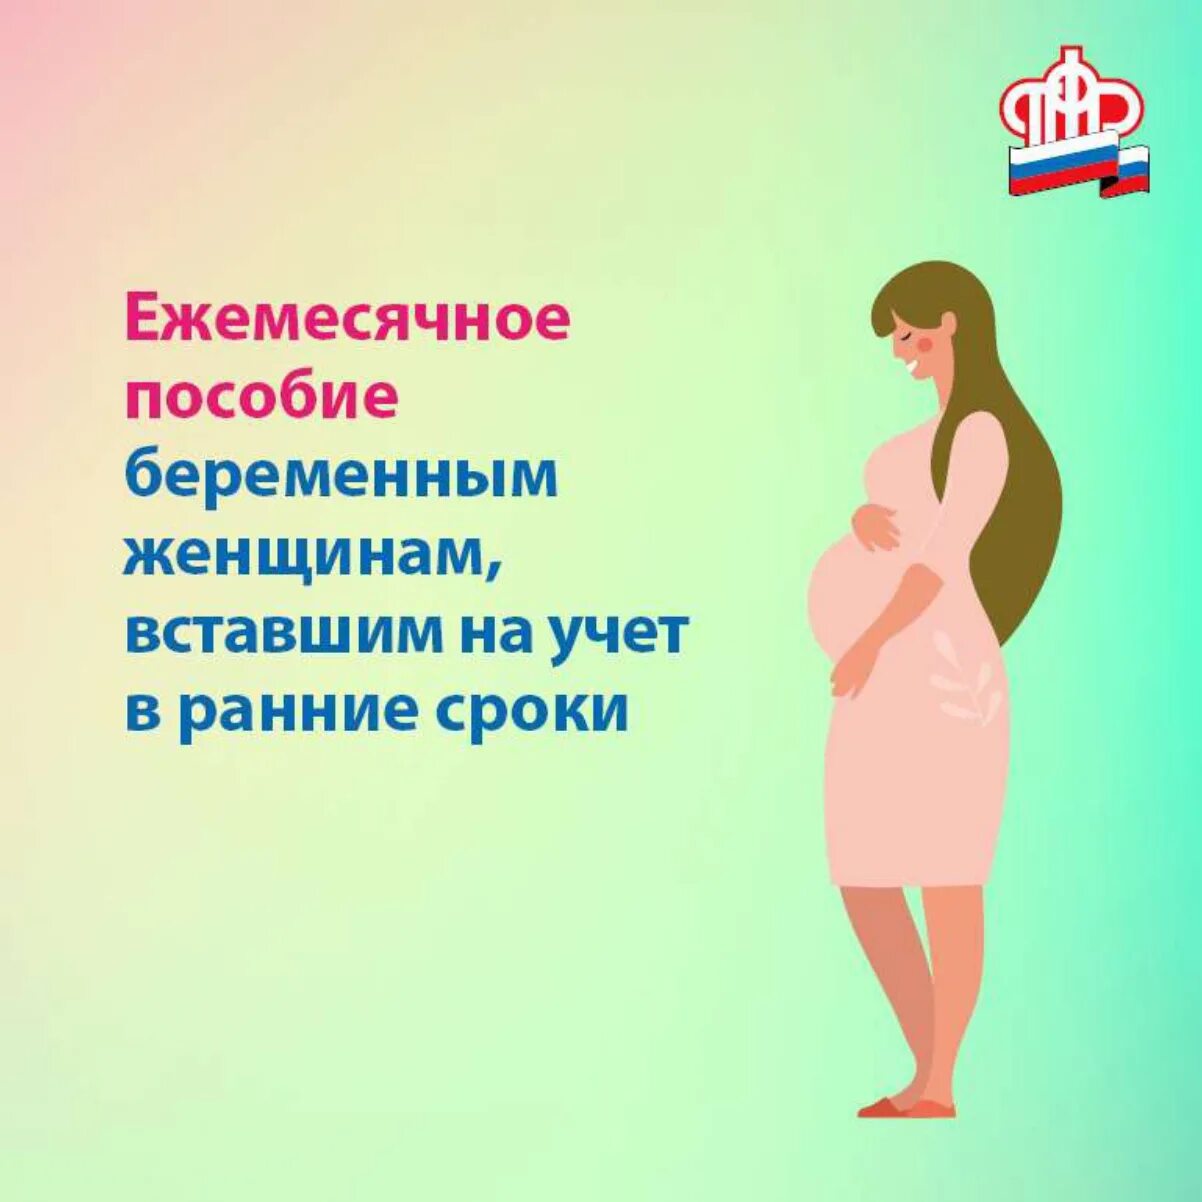 Вторая беременность пособия. Ежемесячное пособие для беременных. Пособие беременной женщине. Ранние сроки беременности пособие. Ежемесячное пособие беременным женщинам.